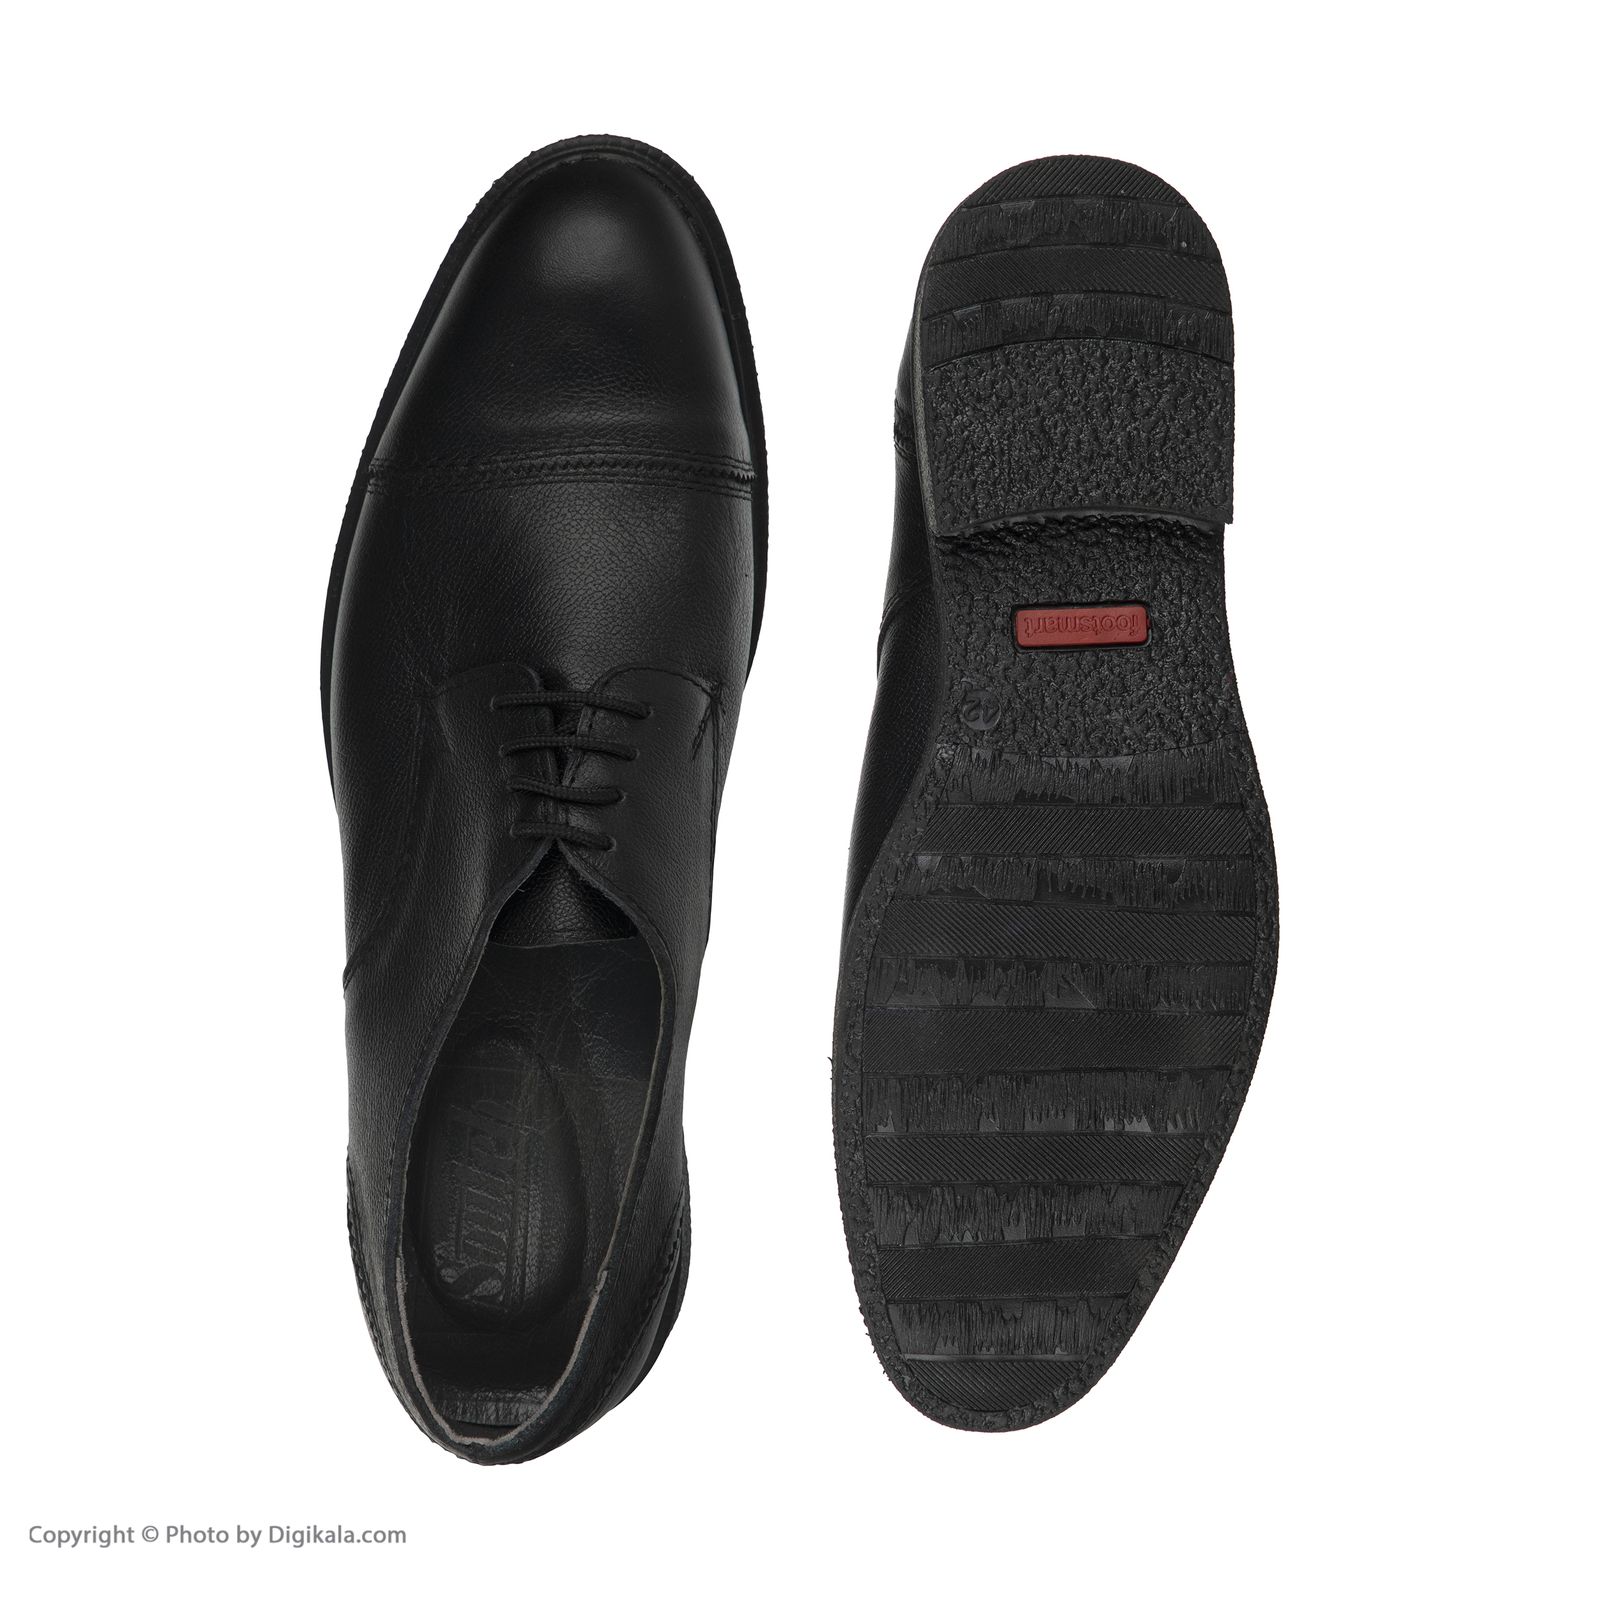  کفش مردانه سوته مدل 4870F503101 -  - 4